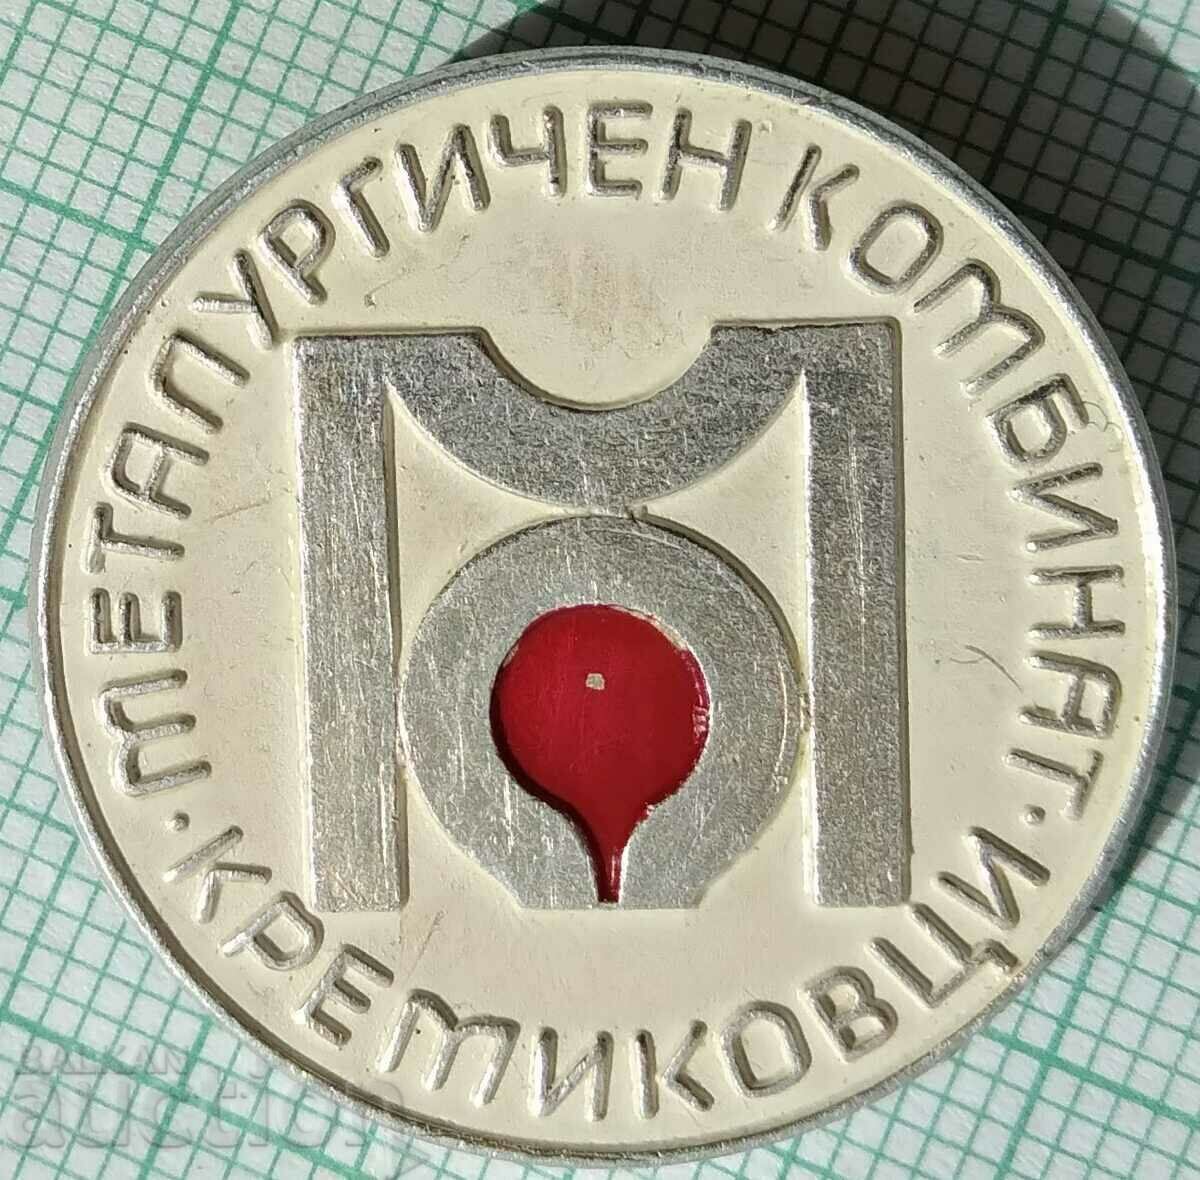 15651 Badge - Kremikovtsi Metallurgical Combine